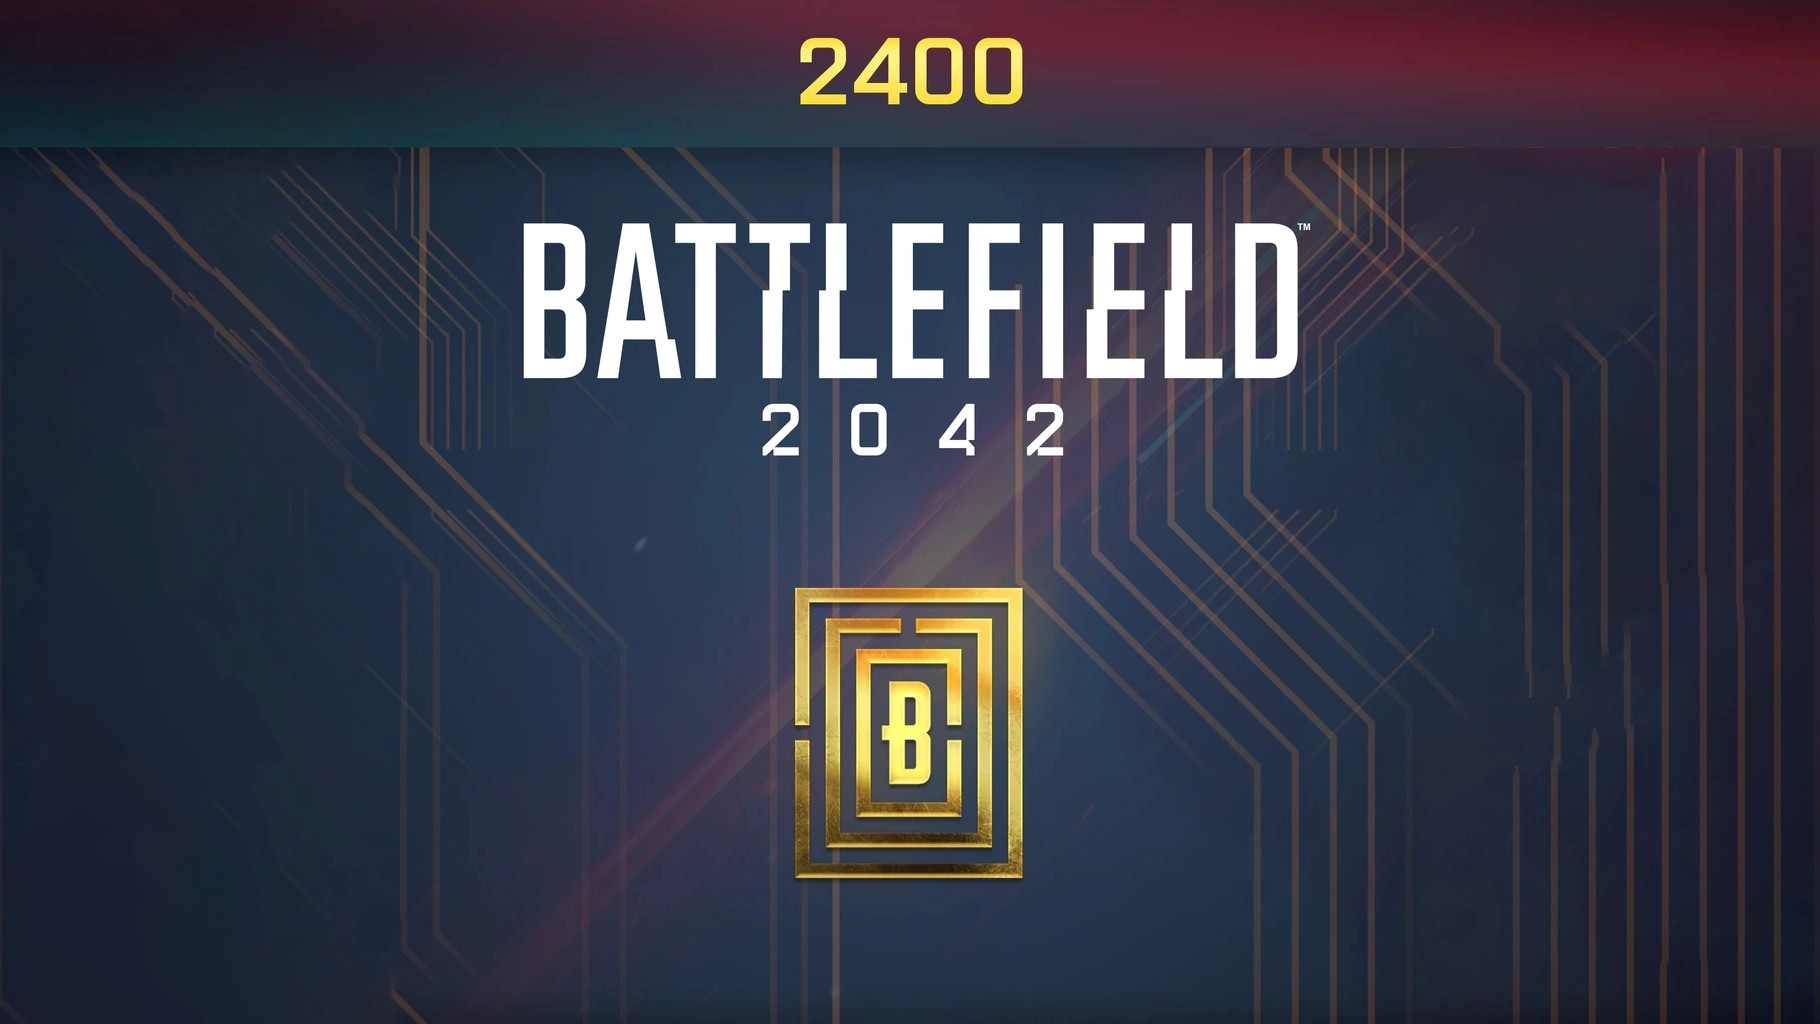 Battlefield 2042 - 2400 BFC Balance XBOX One / Xbox Series X|S CD Key USD 20.9